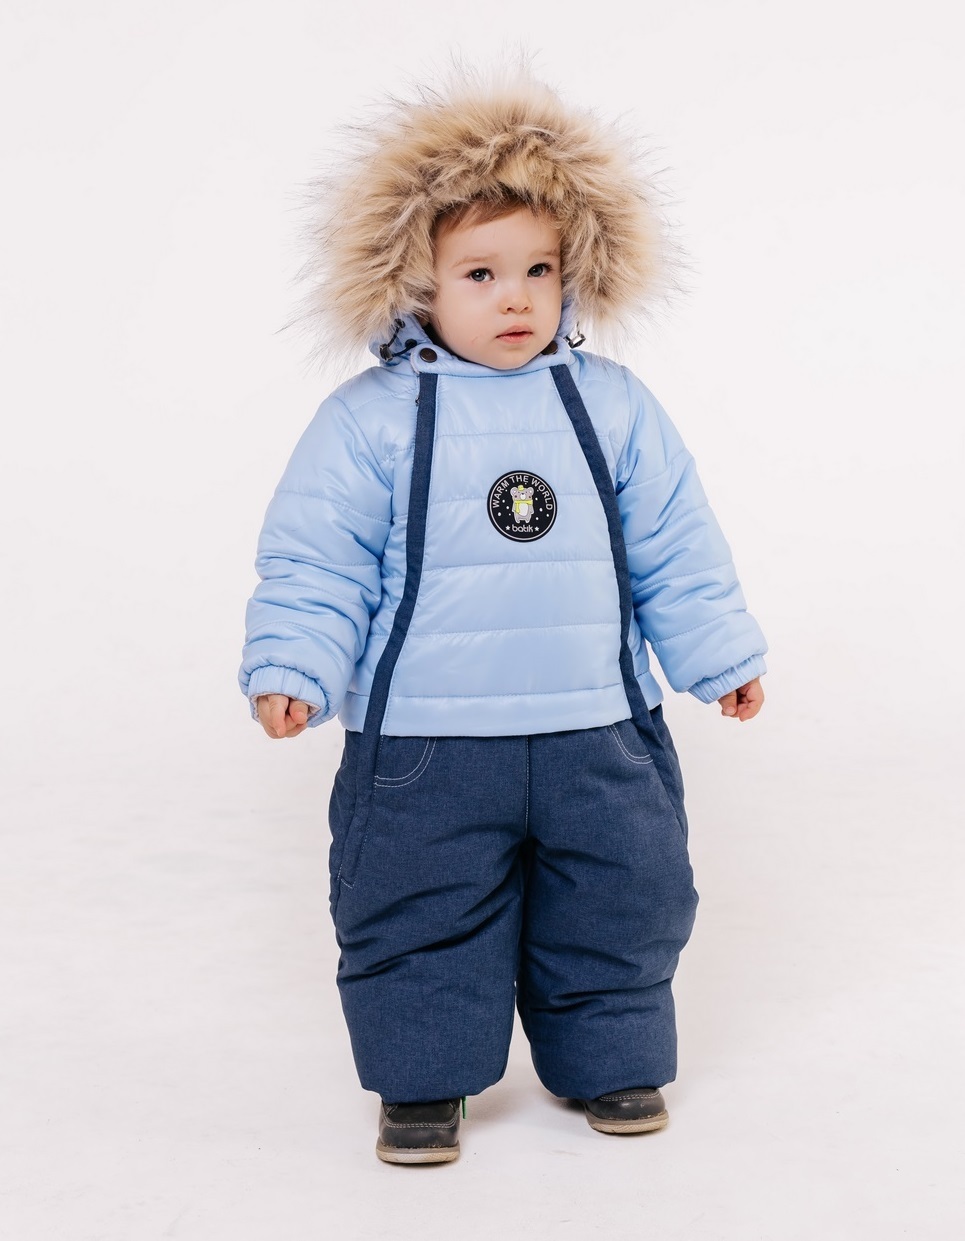 Верхняя детская одежда Зима коллекции 2018/2019 года уже на нашем сайте.